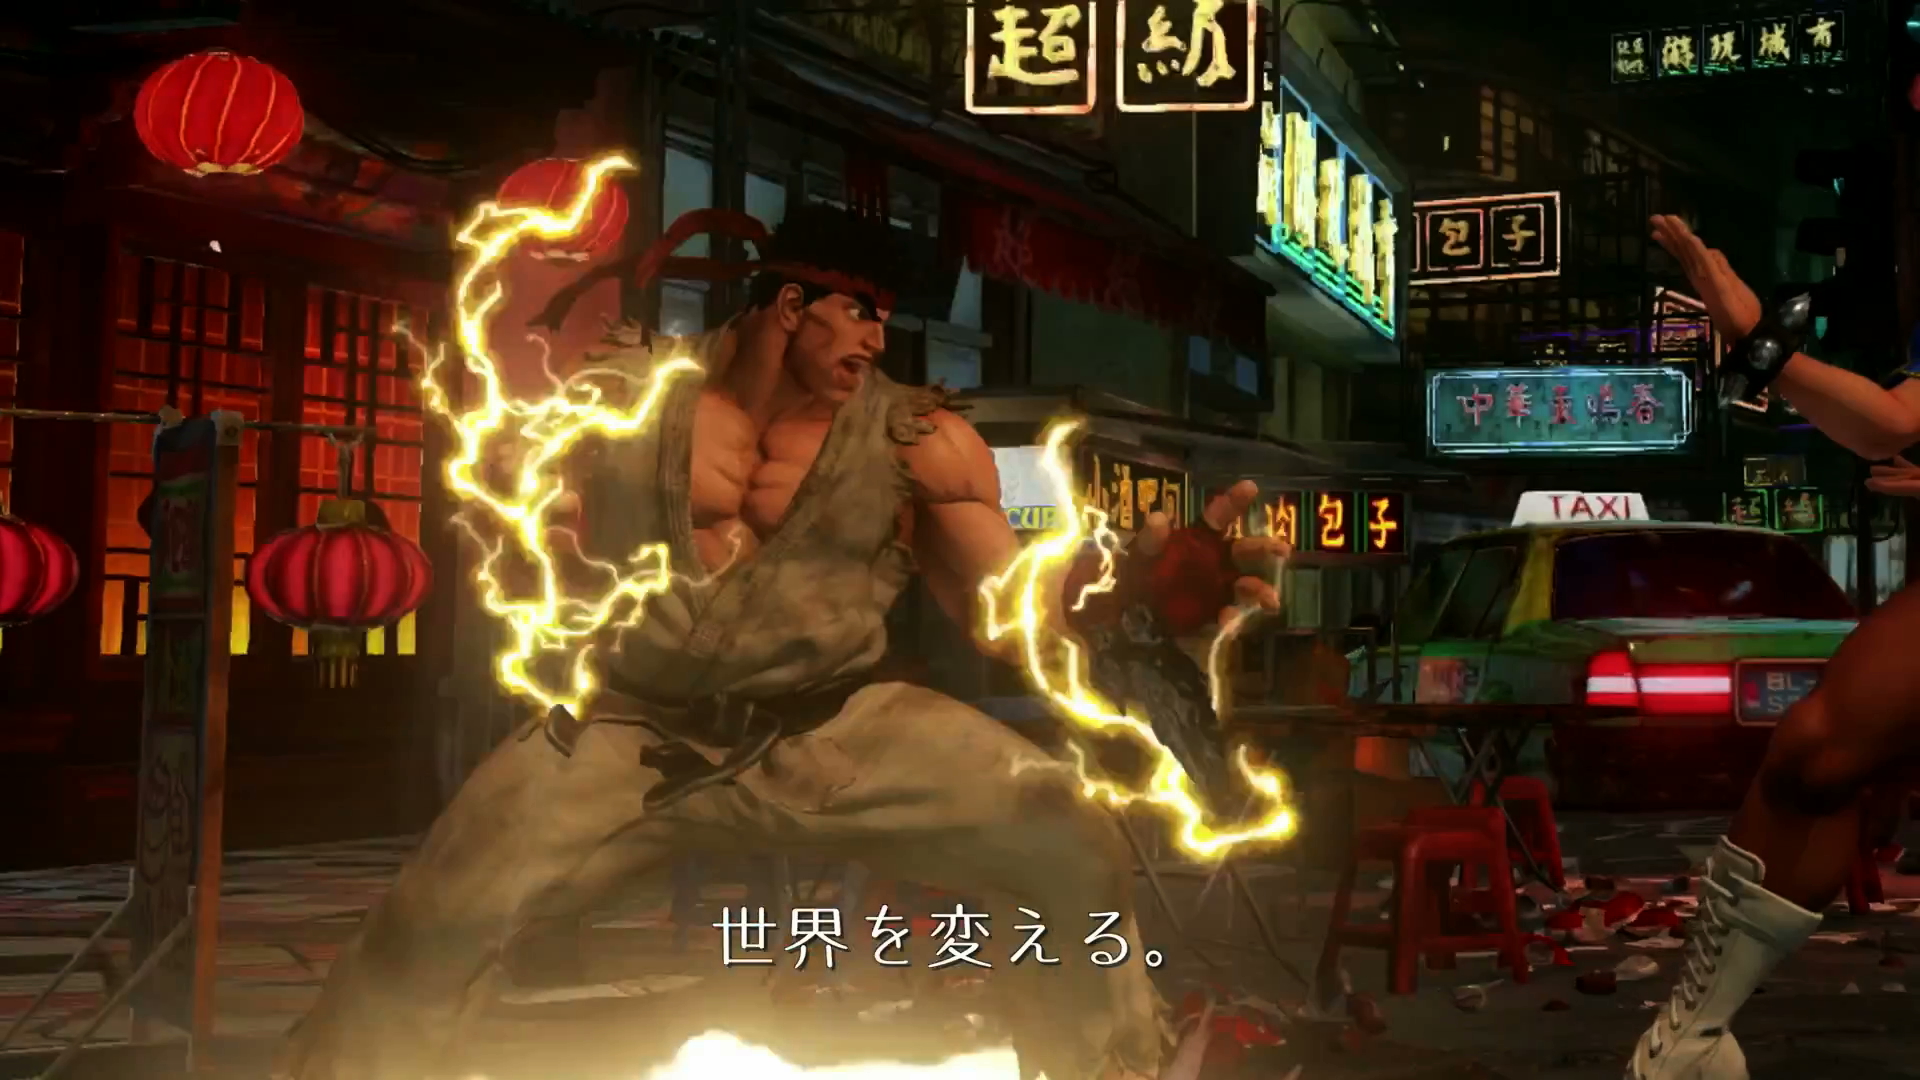 Ryu Electric Boogaloo